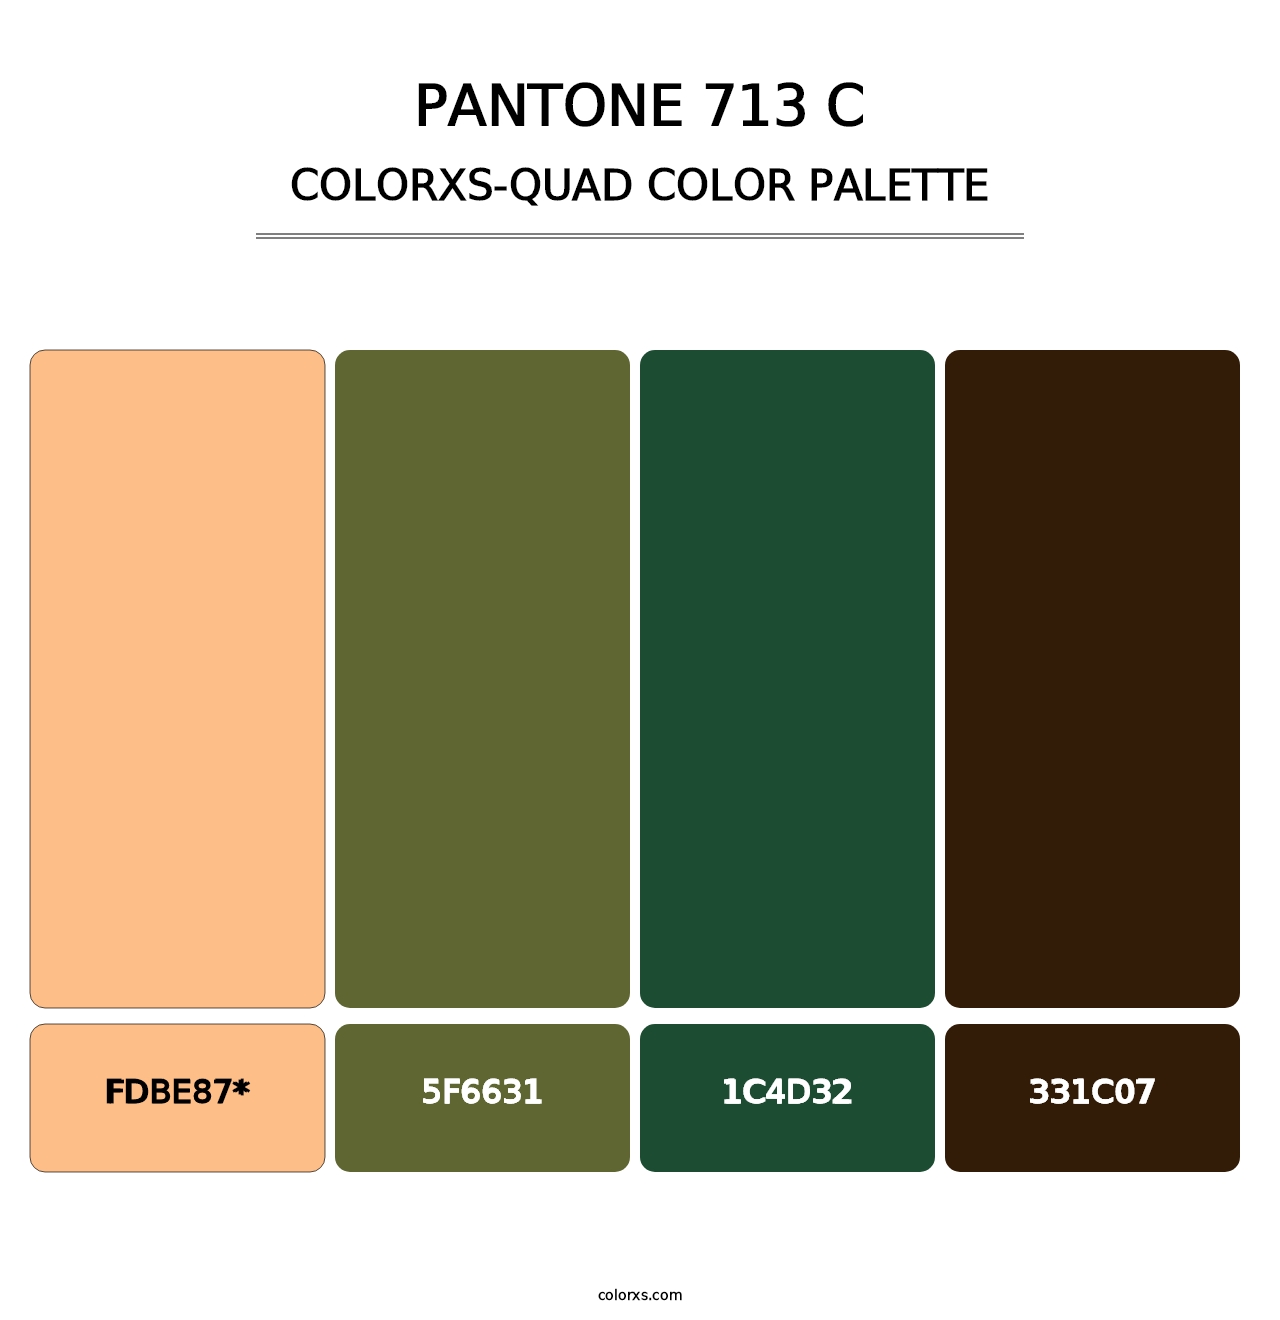 PANTONE 713 C - Colorxs Quad Palette